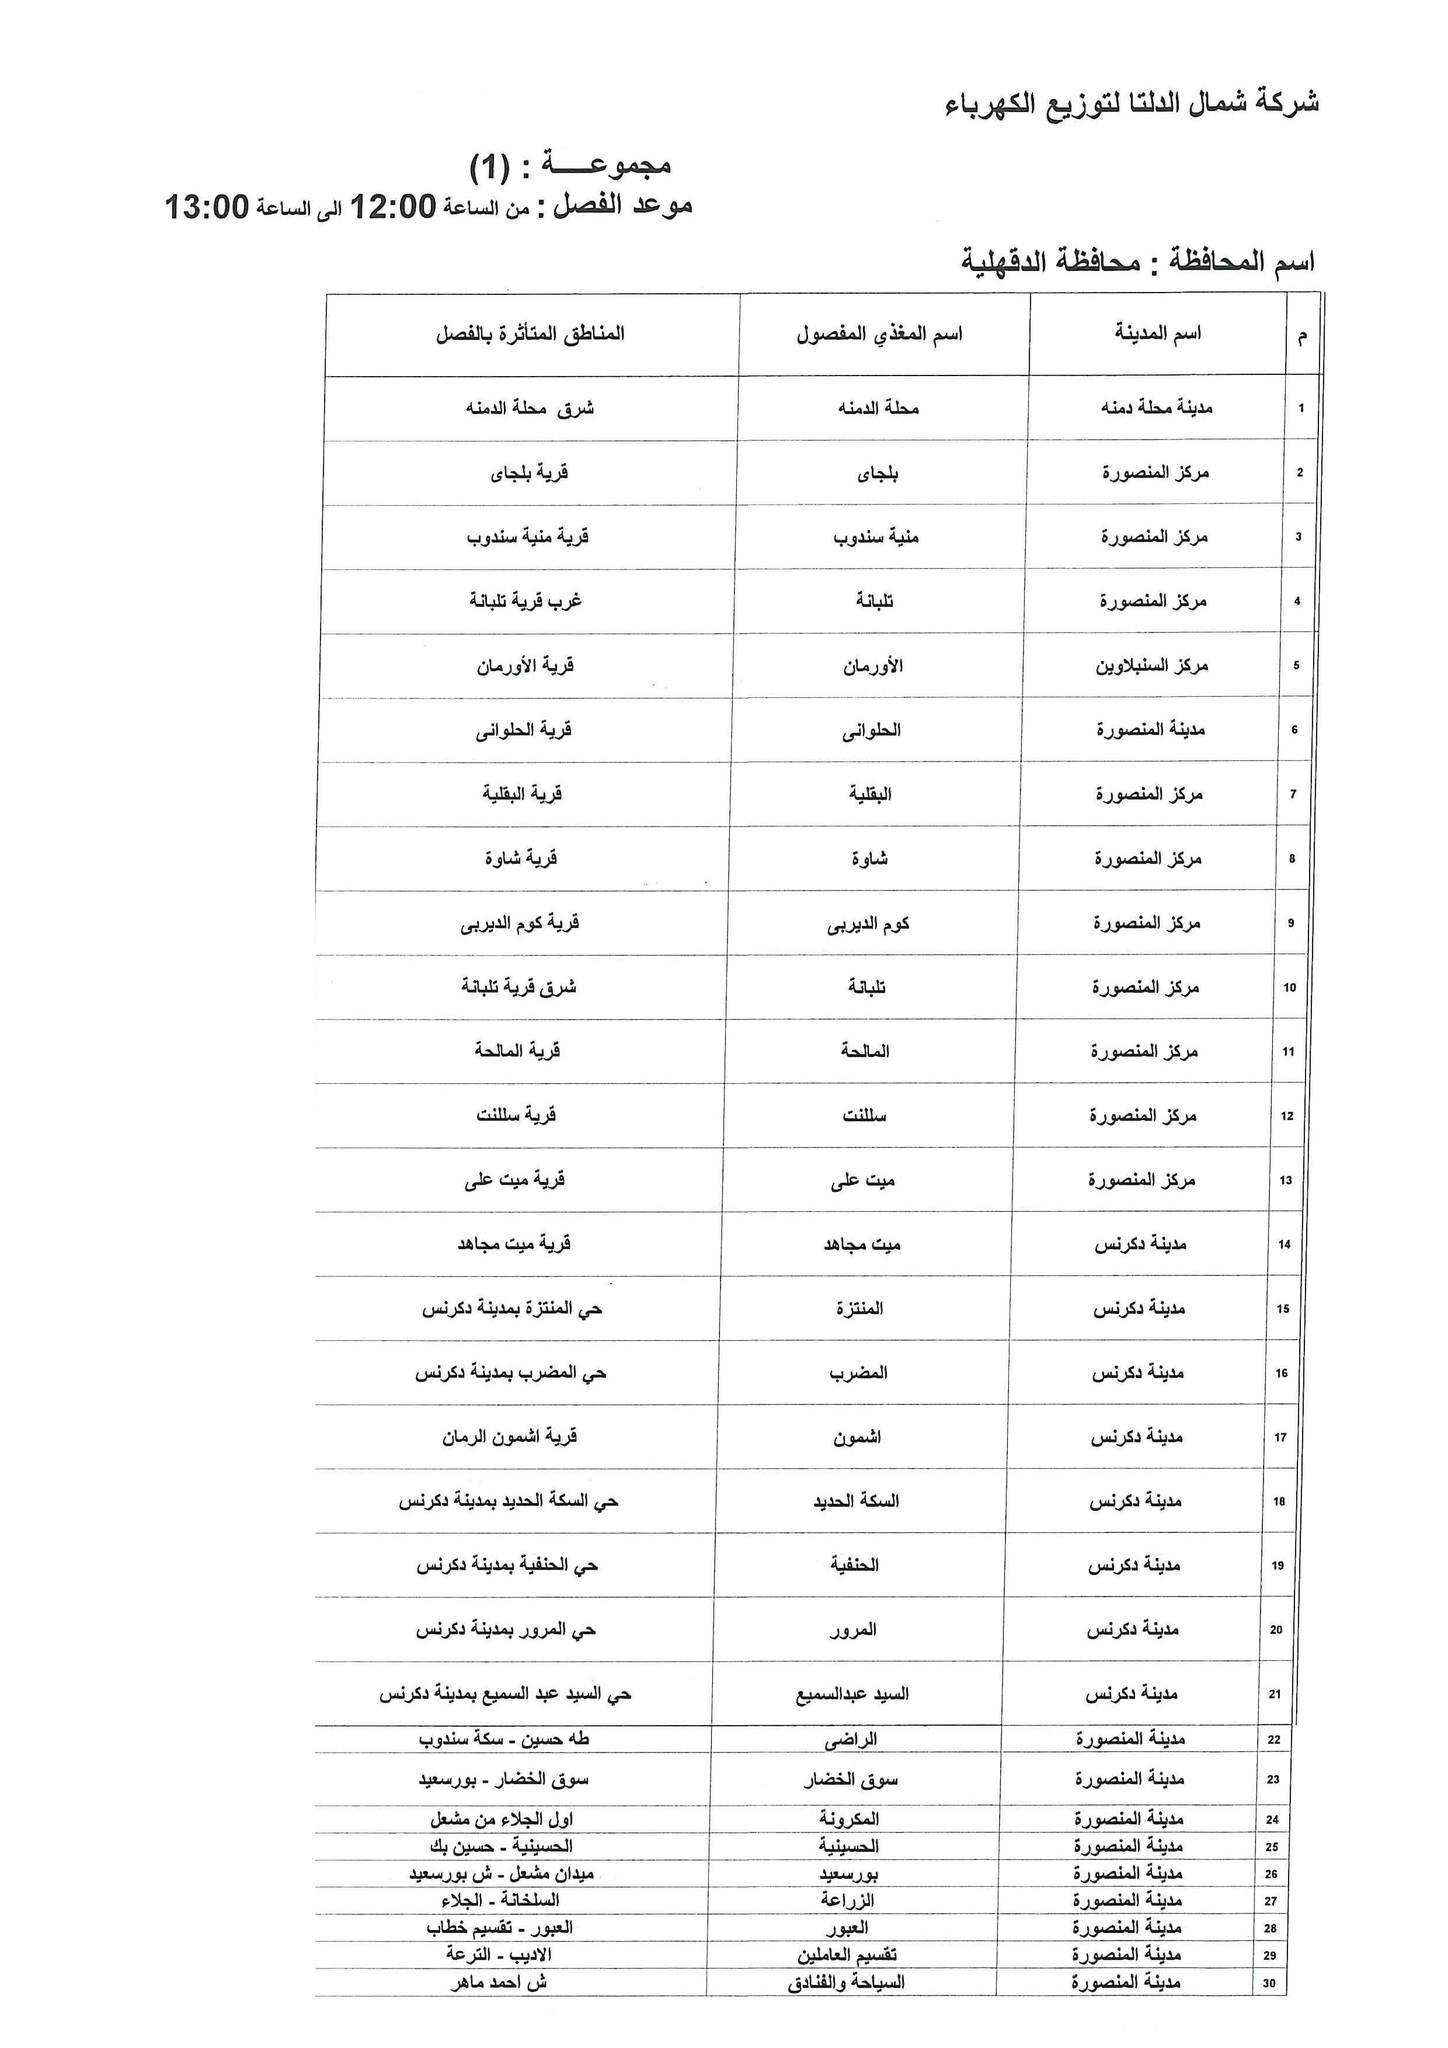 الإعلان عن خطة تخفيف أحمال الكهرباء فى محافظة الدقهلية 22